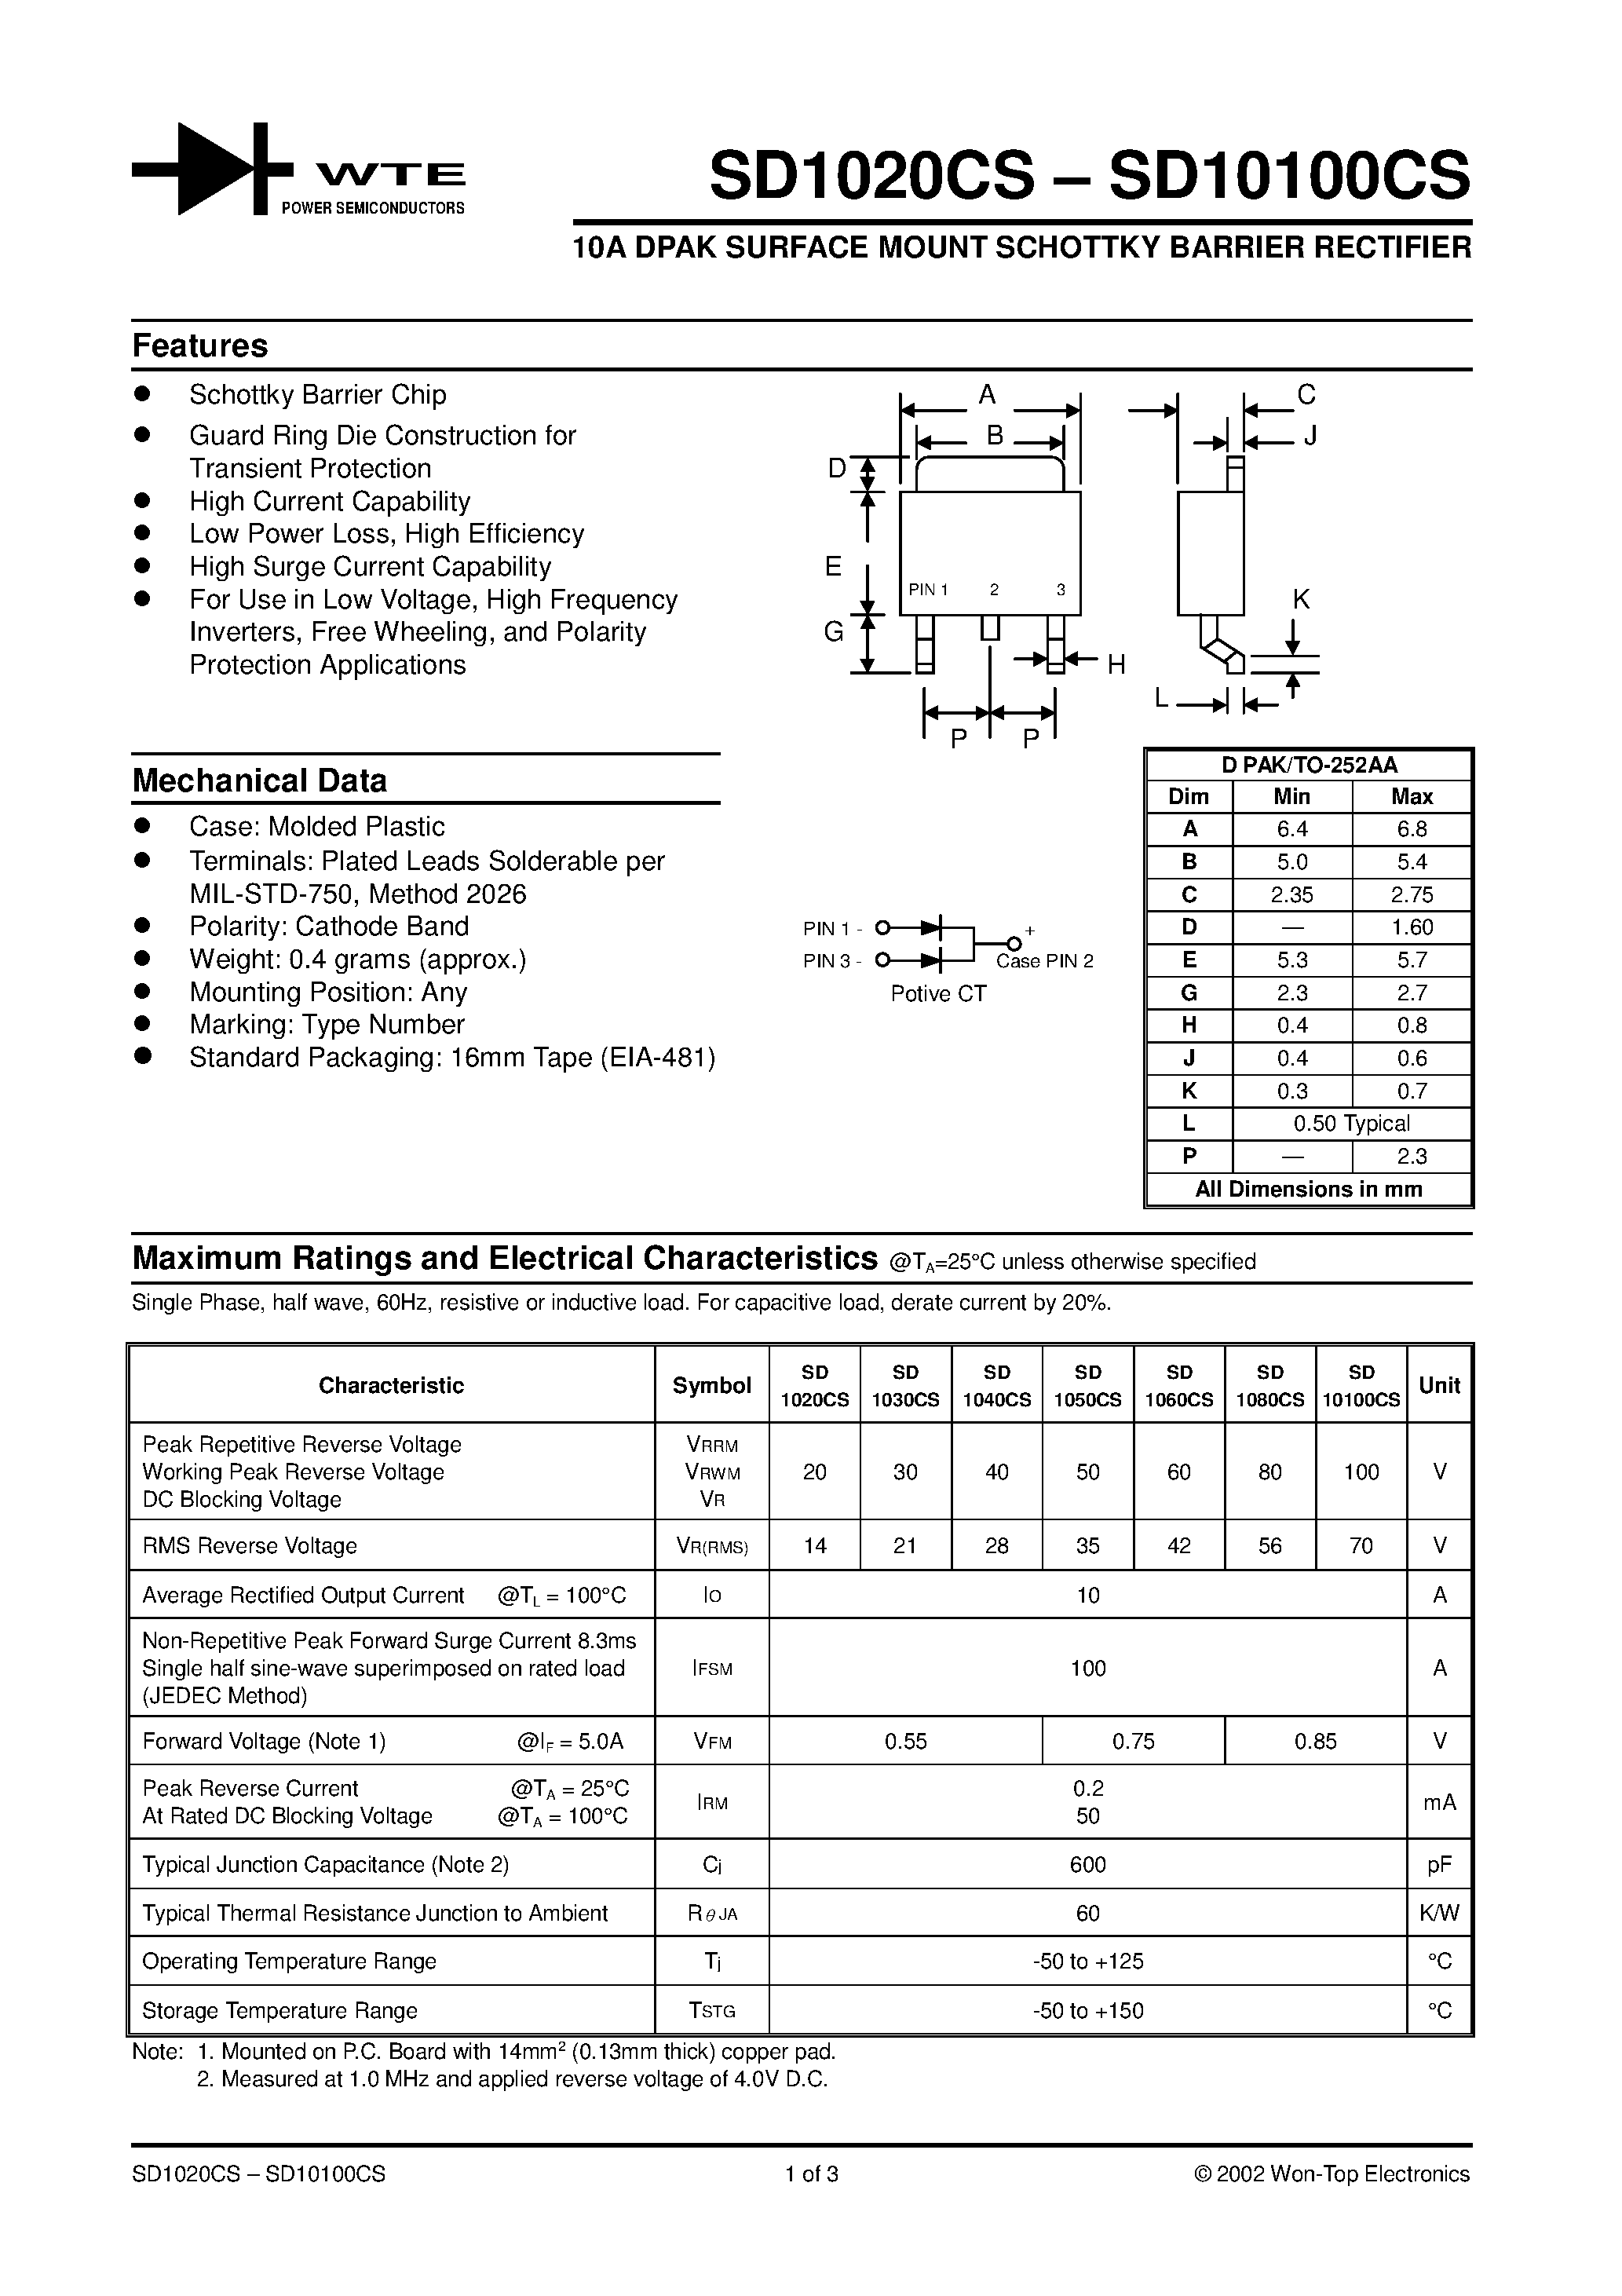 Datasheet SD10100CS - (SD1020CS - SD10100CS) 10A DPAK SURFACE MOUNT SCHOTTKY BARRIER RECTIFIER page 1